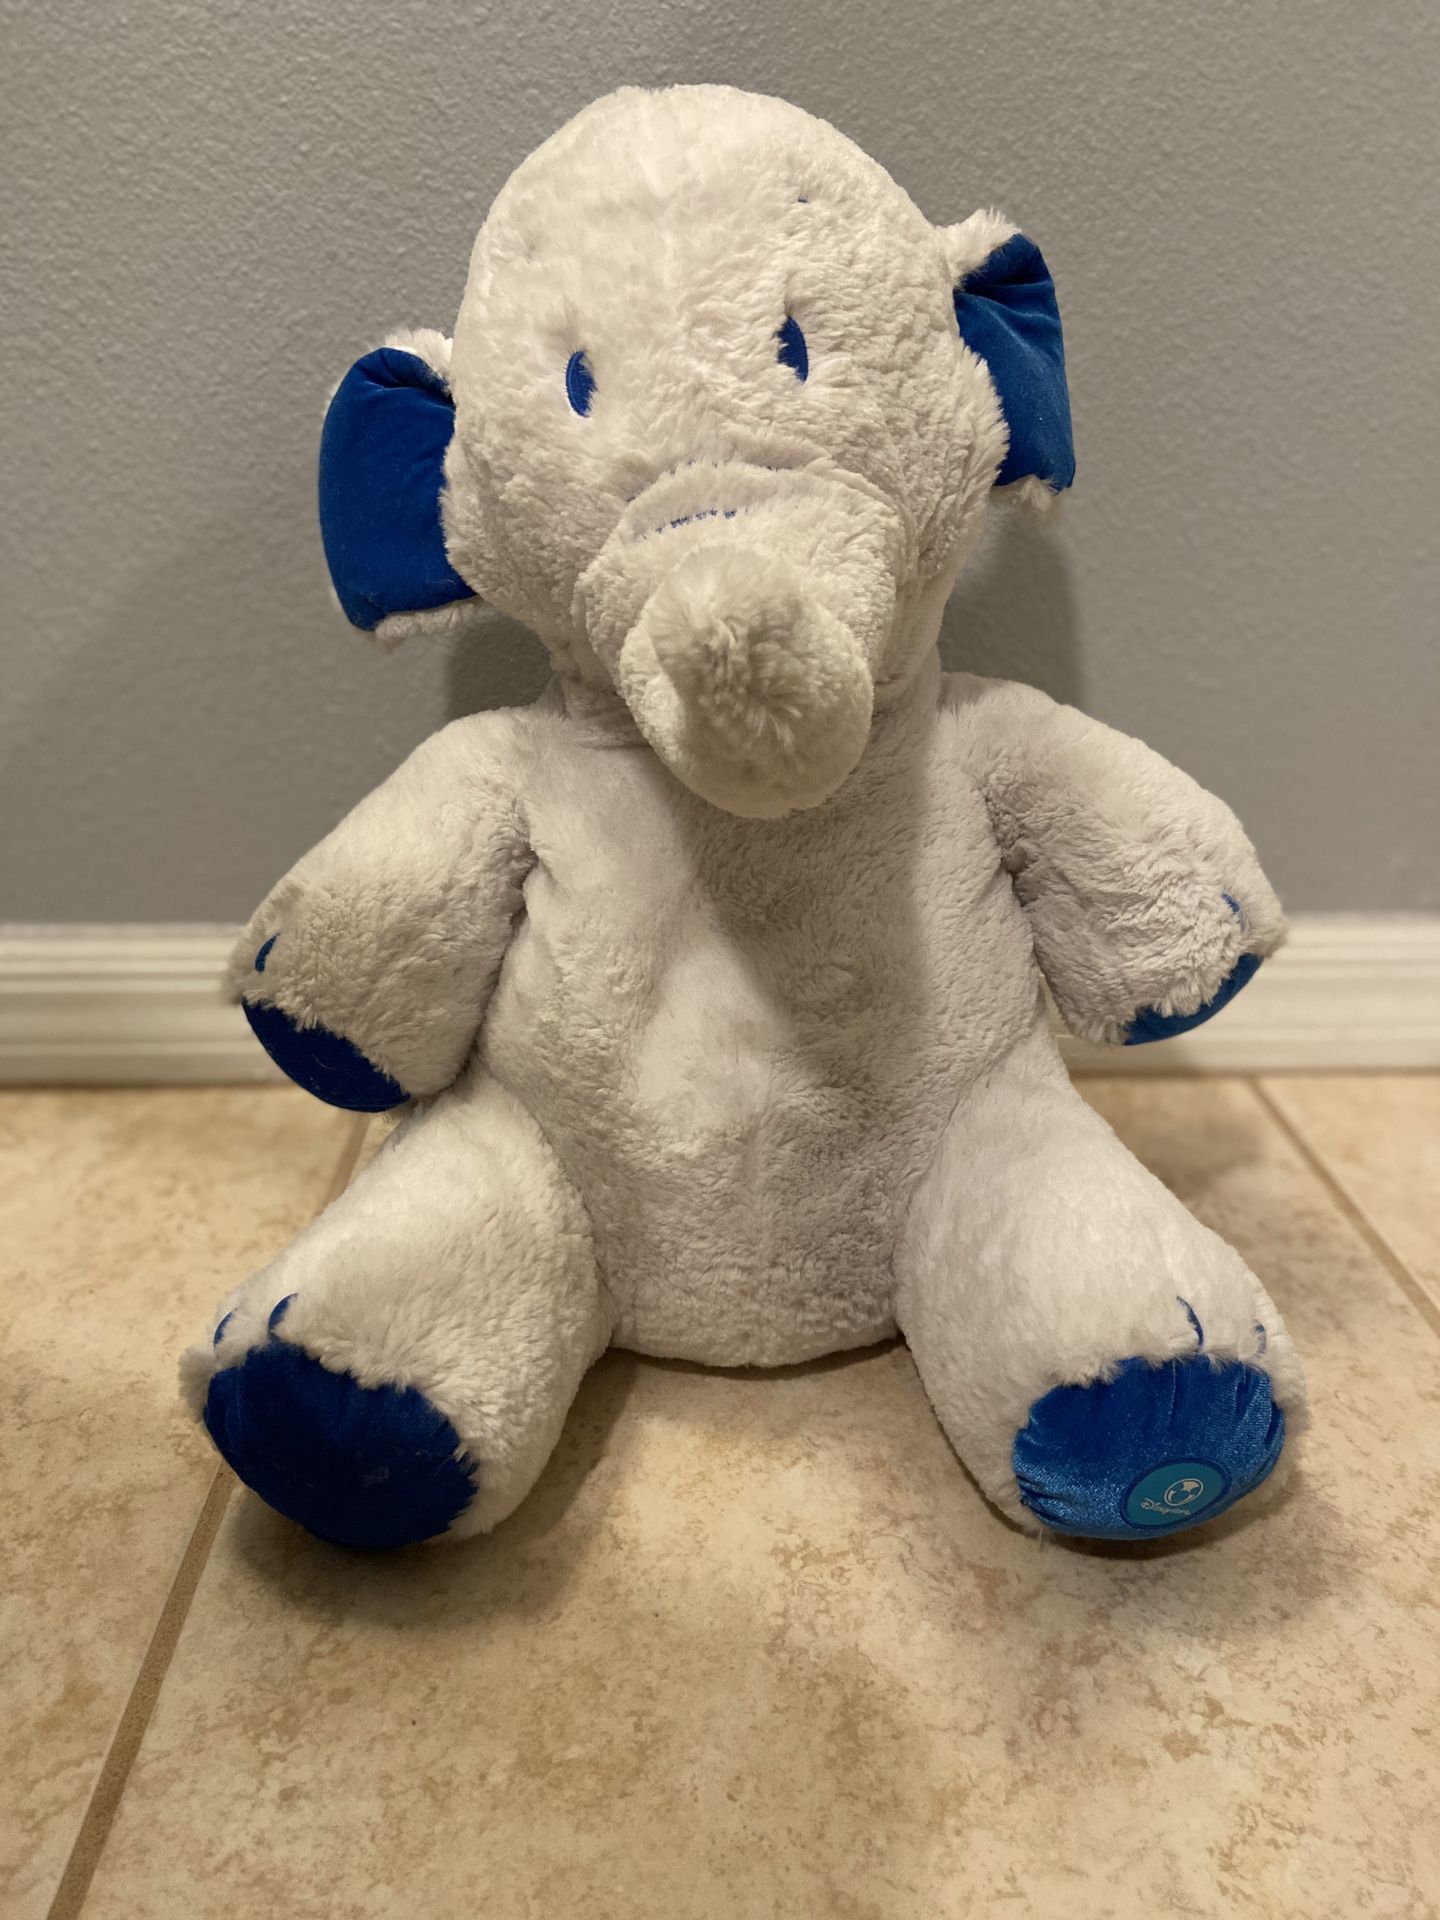 Collectible: Winter Lumpy White Heffalump Elephant 18" Plush Stuffed Toy